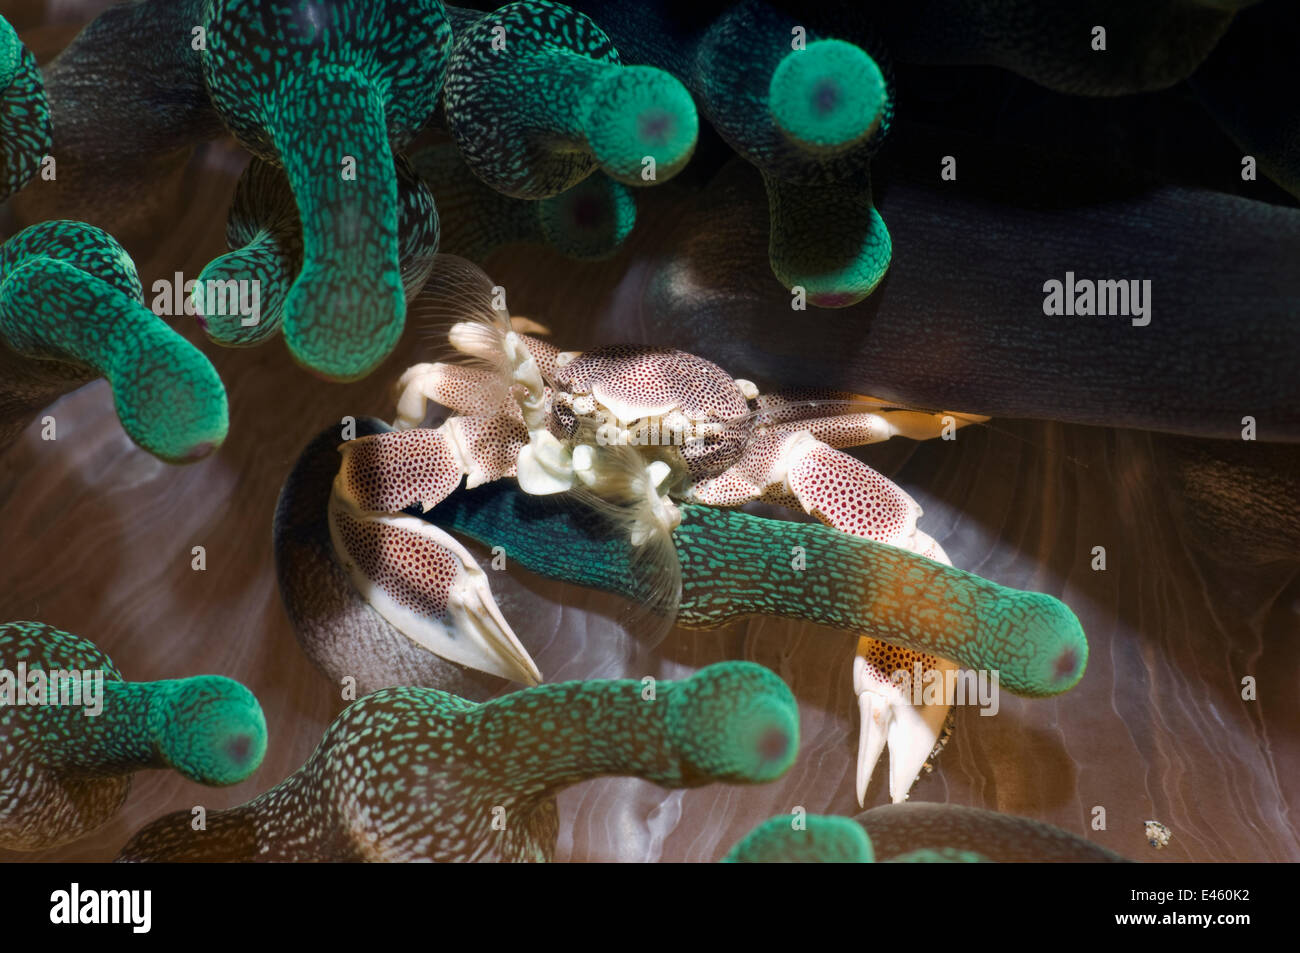 Crabe porcelaine Neopetrolisthes maculatus) (avec l'alimentation des ventilateurs, visibles entre les soies de tentacules d'anémone. Rinca, le Parc National de Komodo, en Indonésie, en octobre. Banque D'Images